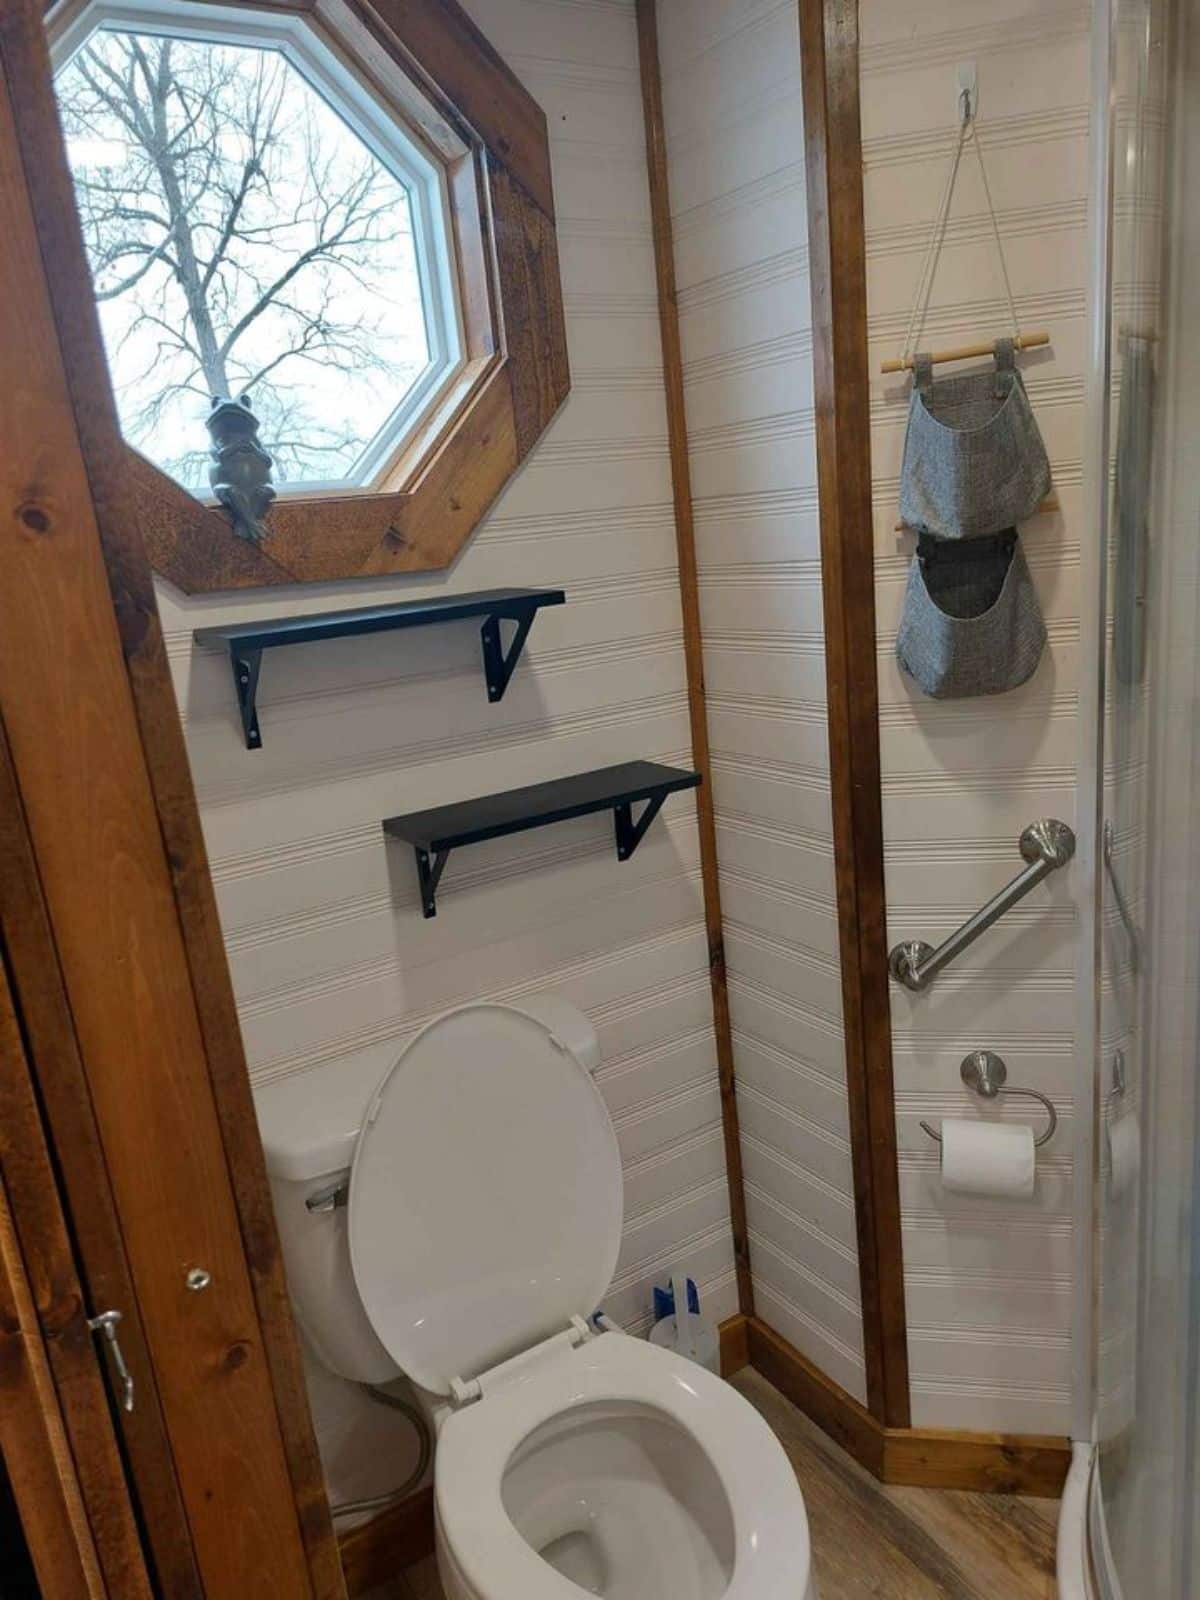 Standard toilet is installed in bathroom